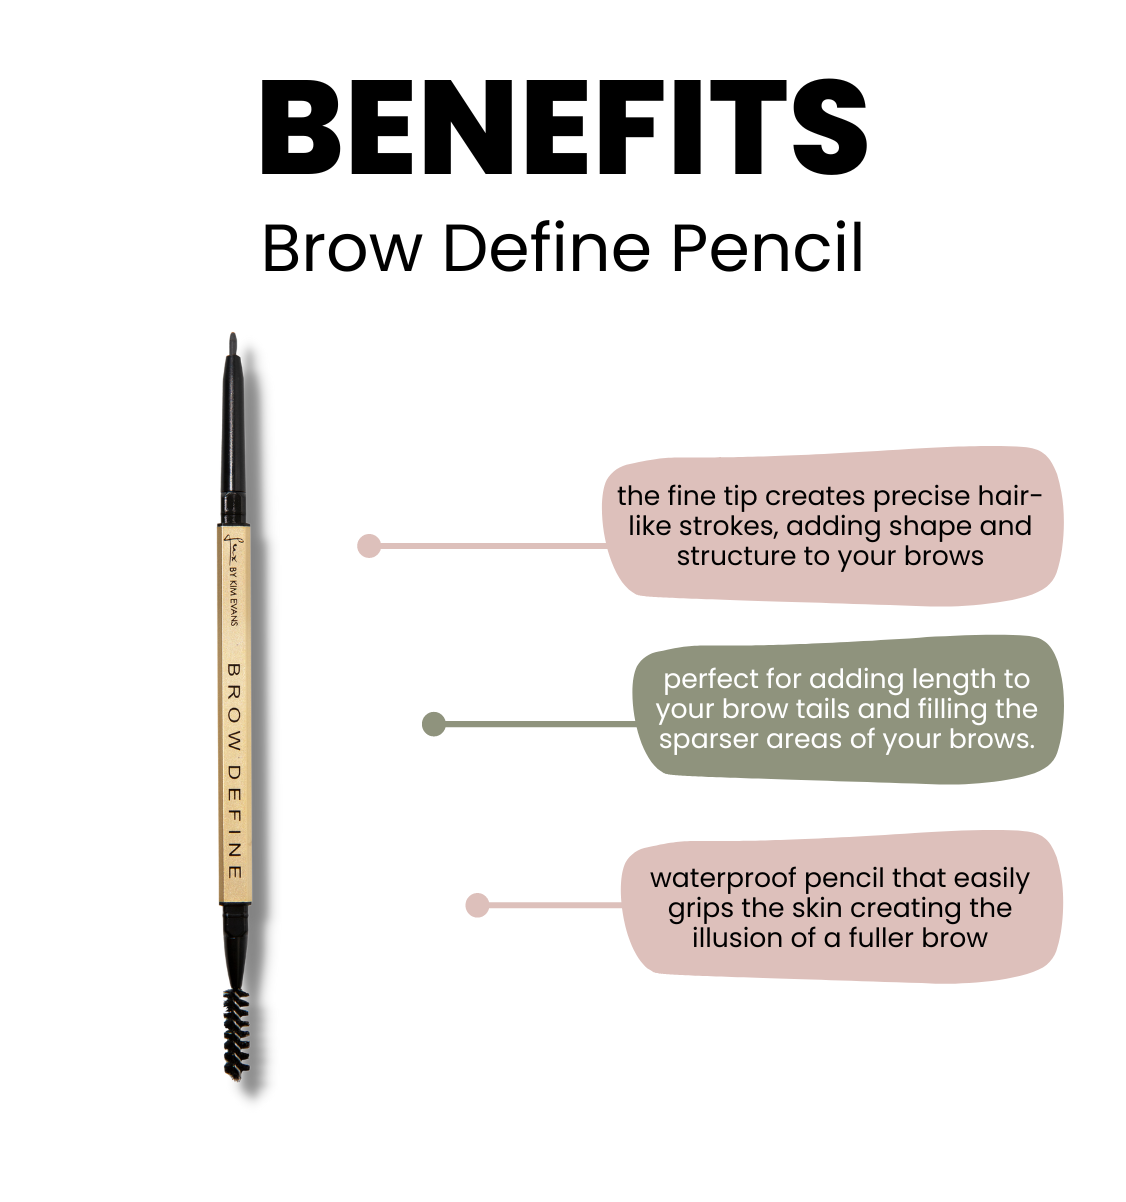 Brow Define Pencil